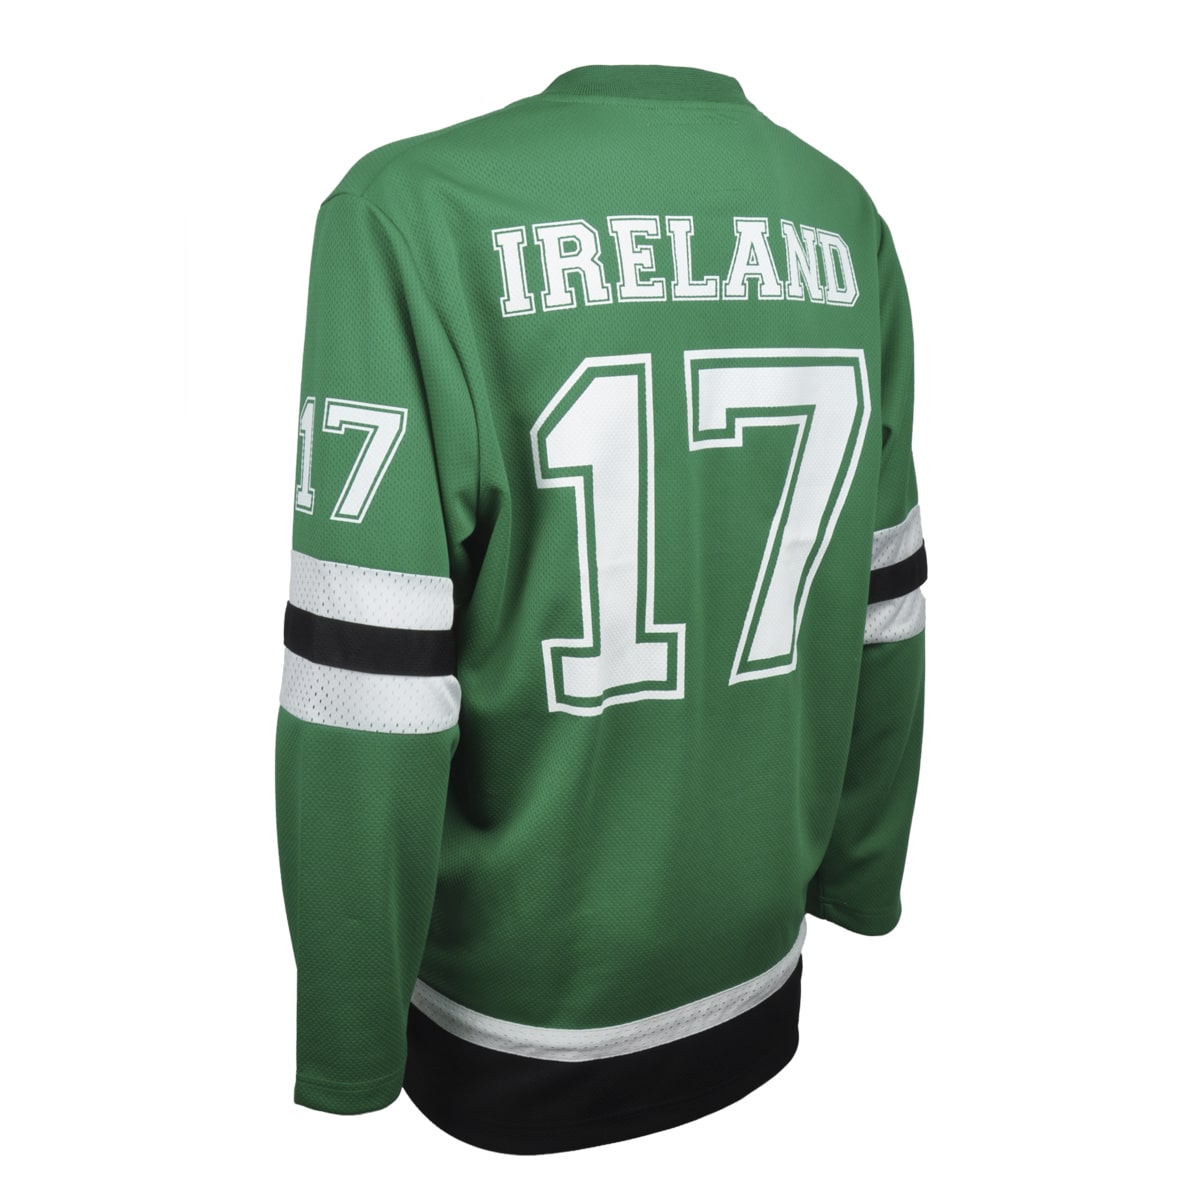 Ireland Black and Green Hockey Jersey